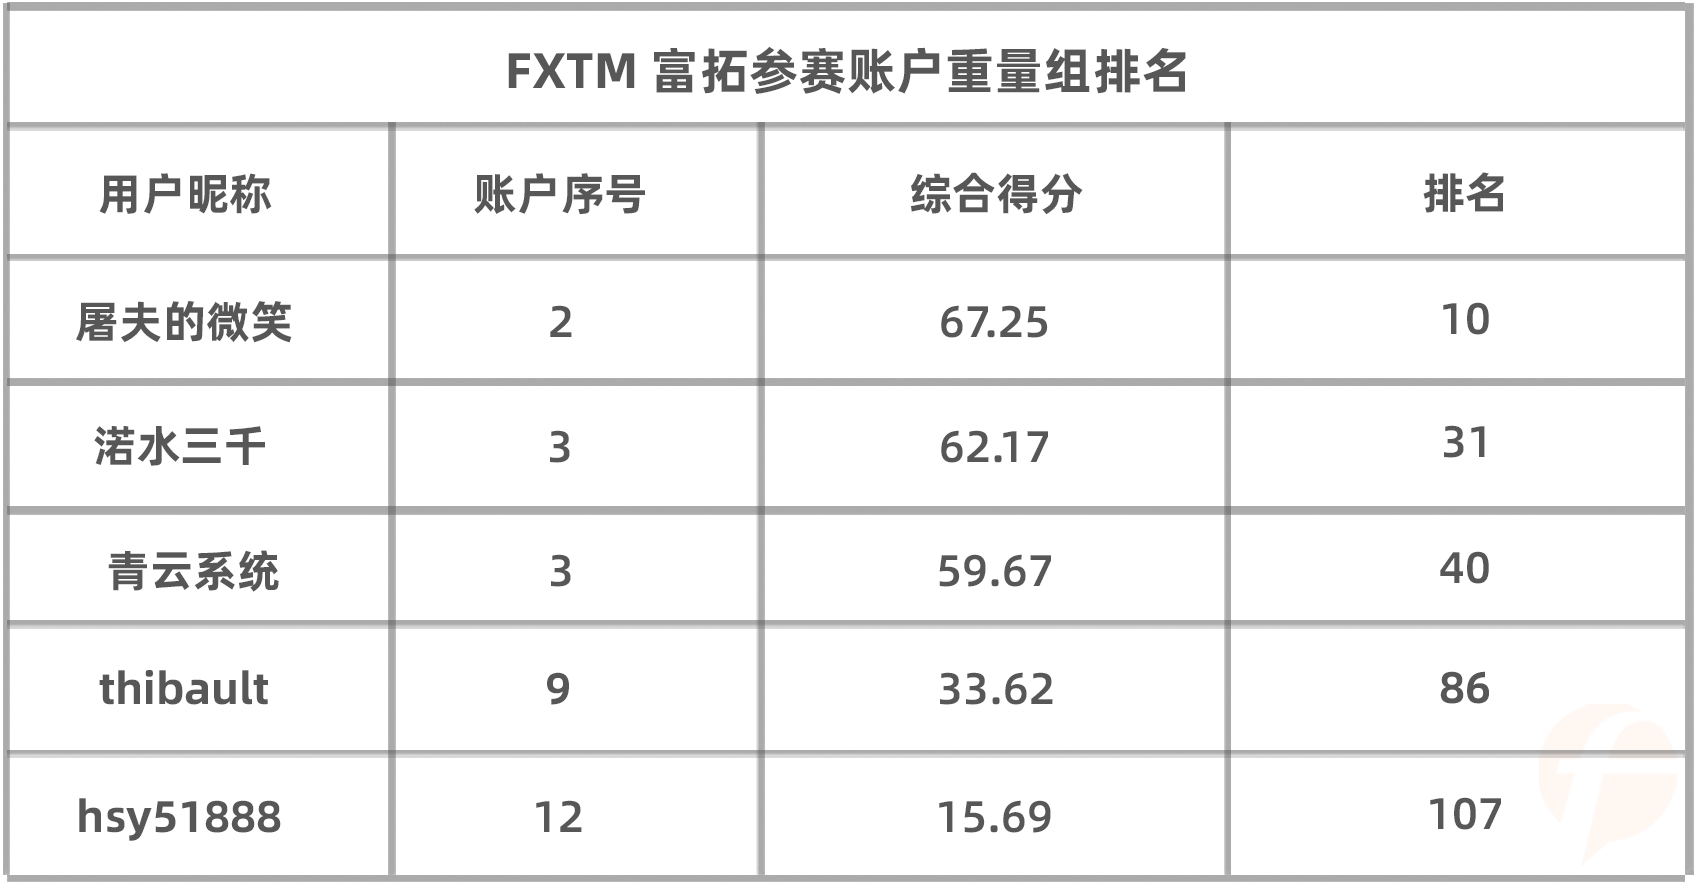 盈利账户占比高达70%，FXTM 富拓组参赛选手来势汹汹！